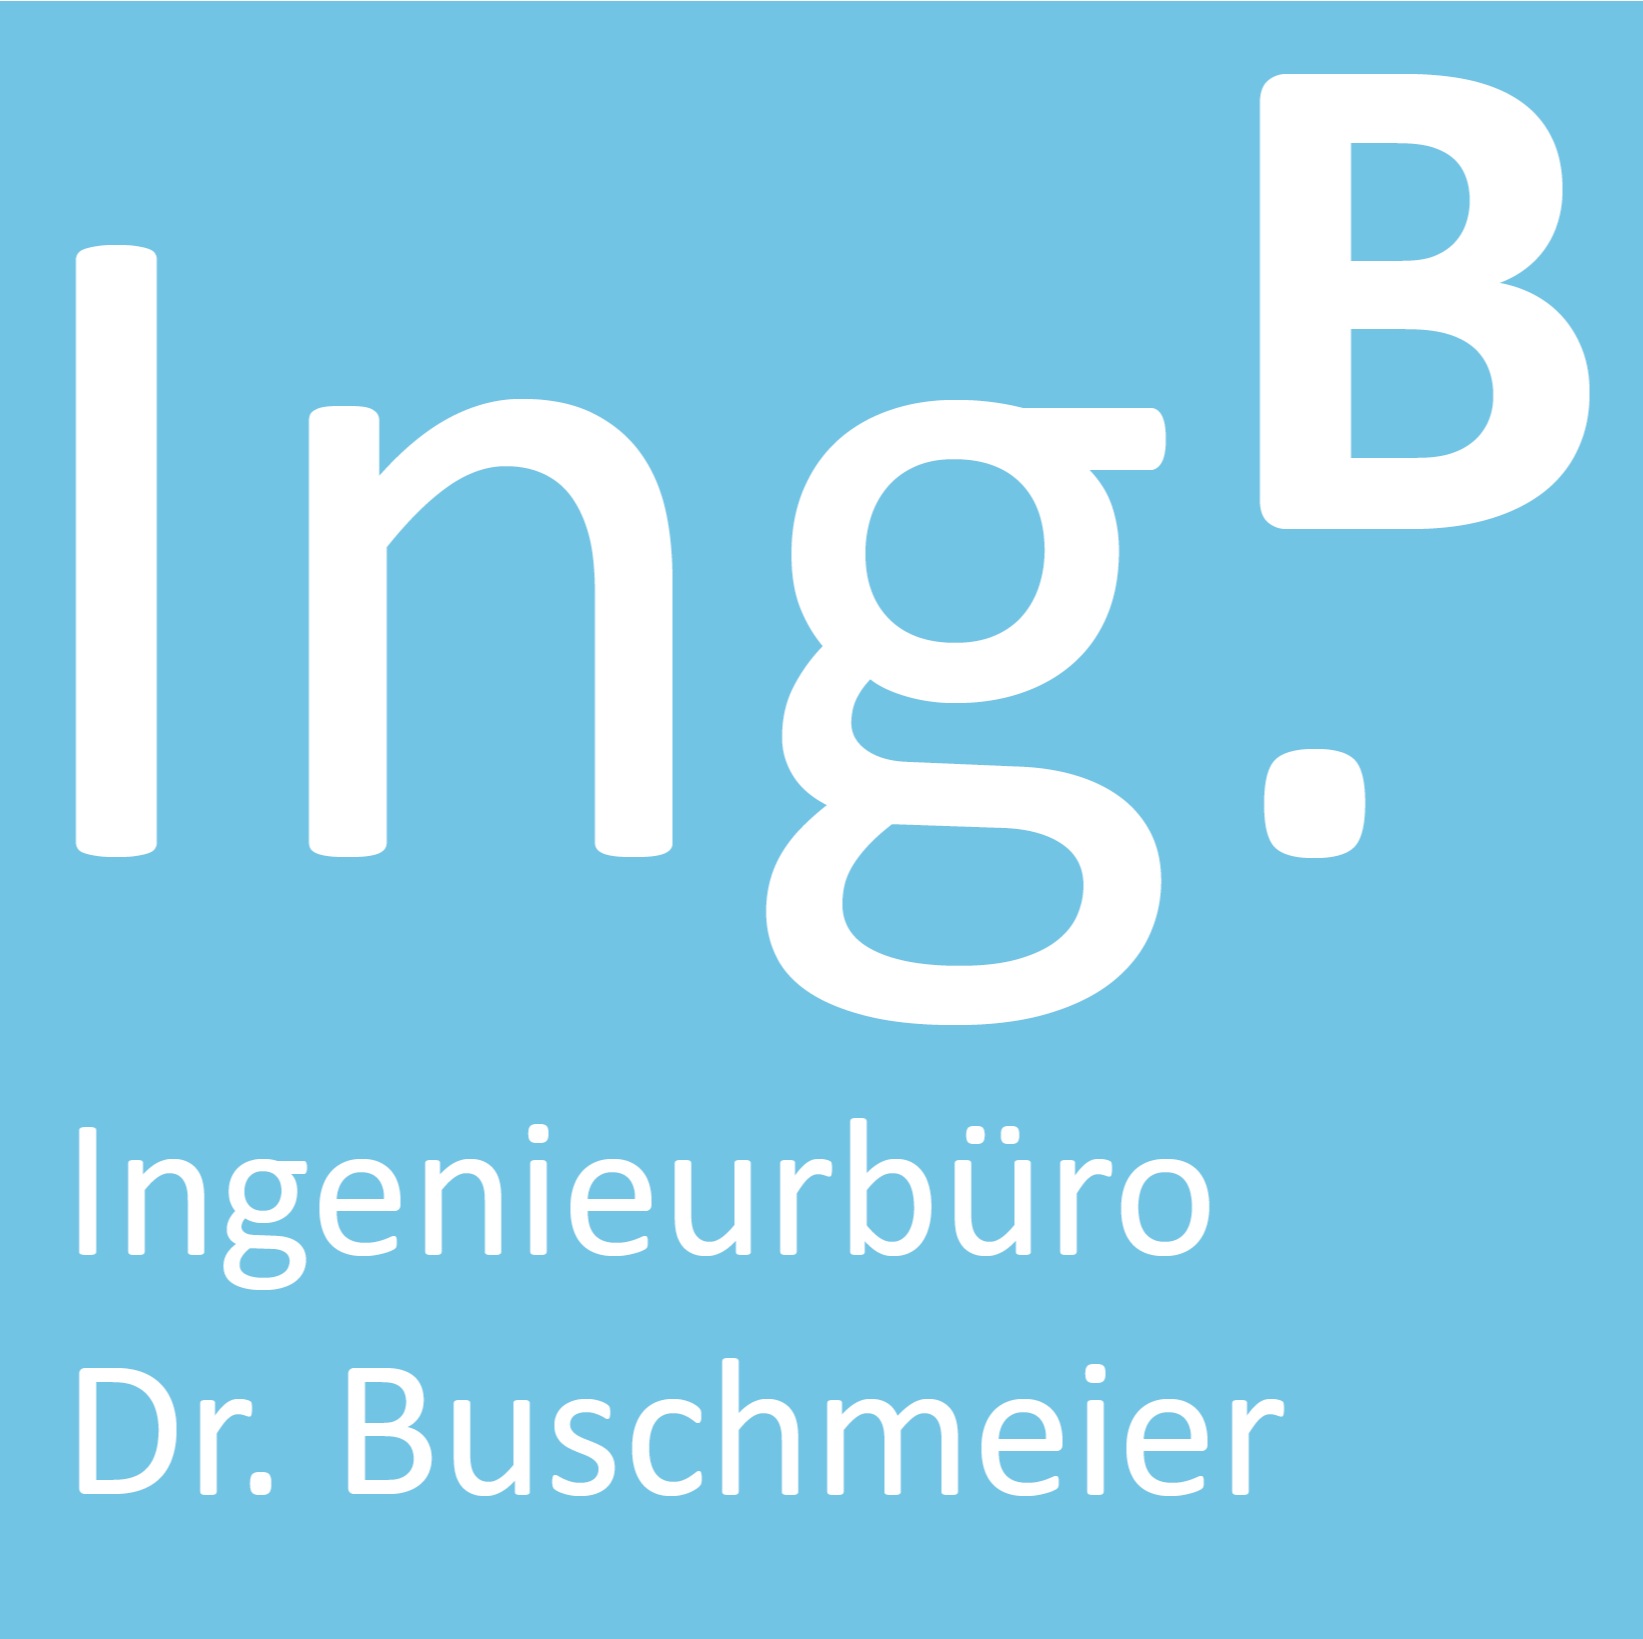 Ingenieurbüro Dr. Buschmeier logo